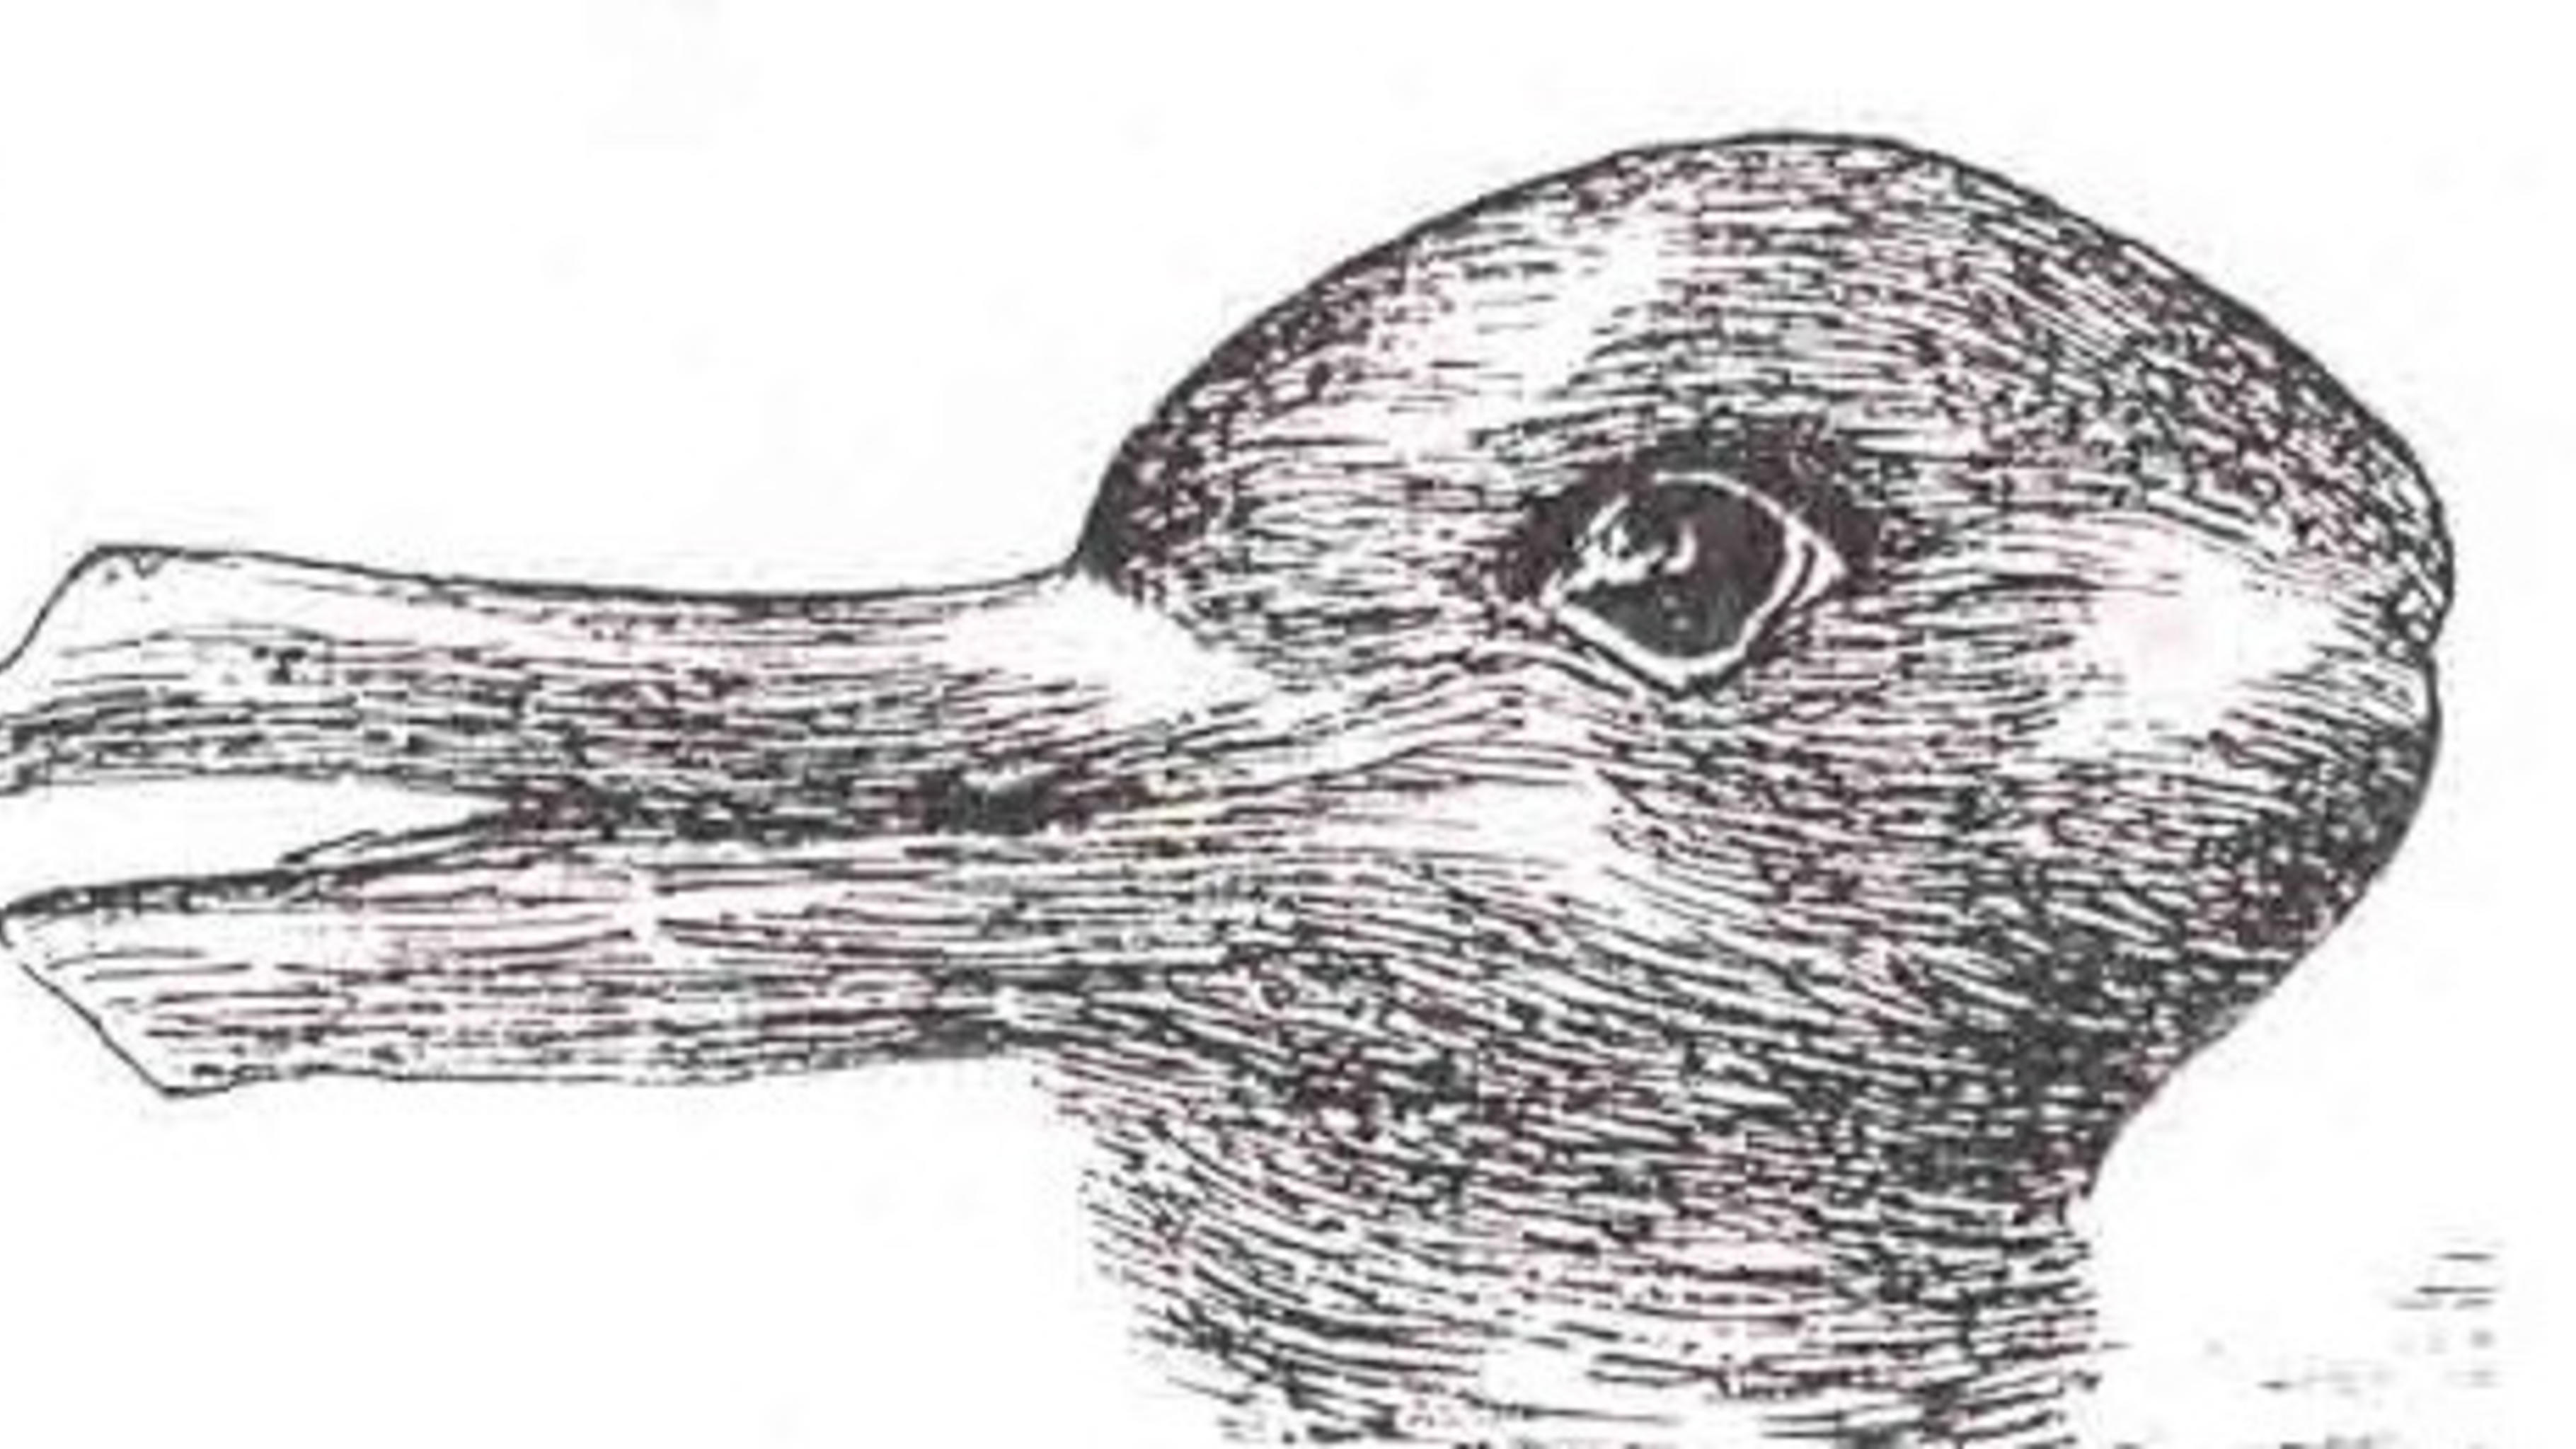 Eine Ente  – oder doch ein Hase? Quelle: Jastrow, J., The mind's eye (1899).